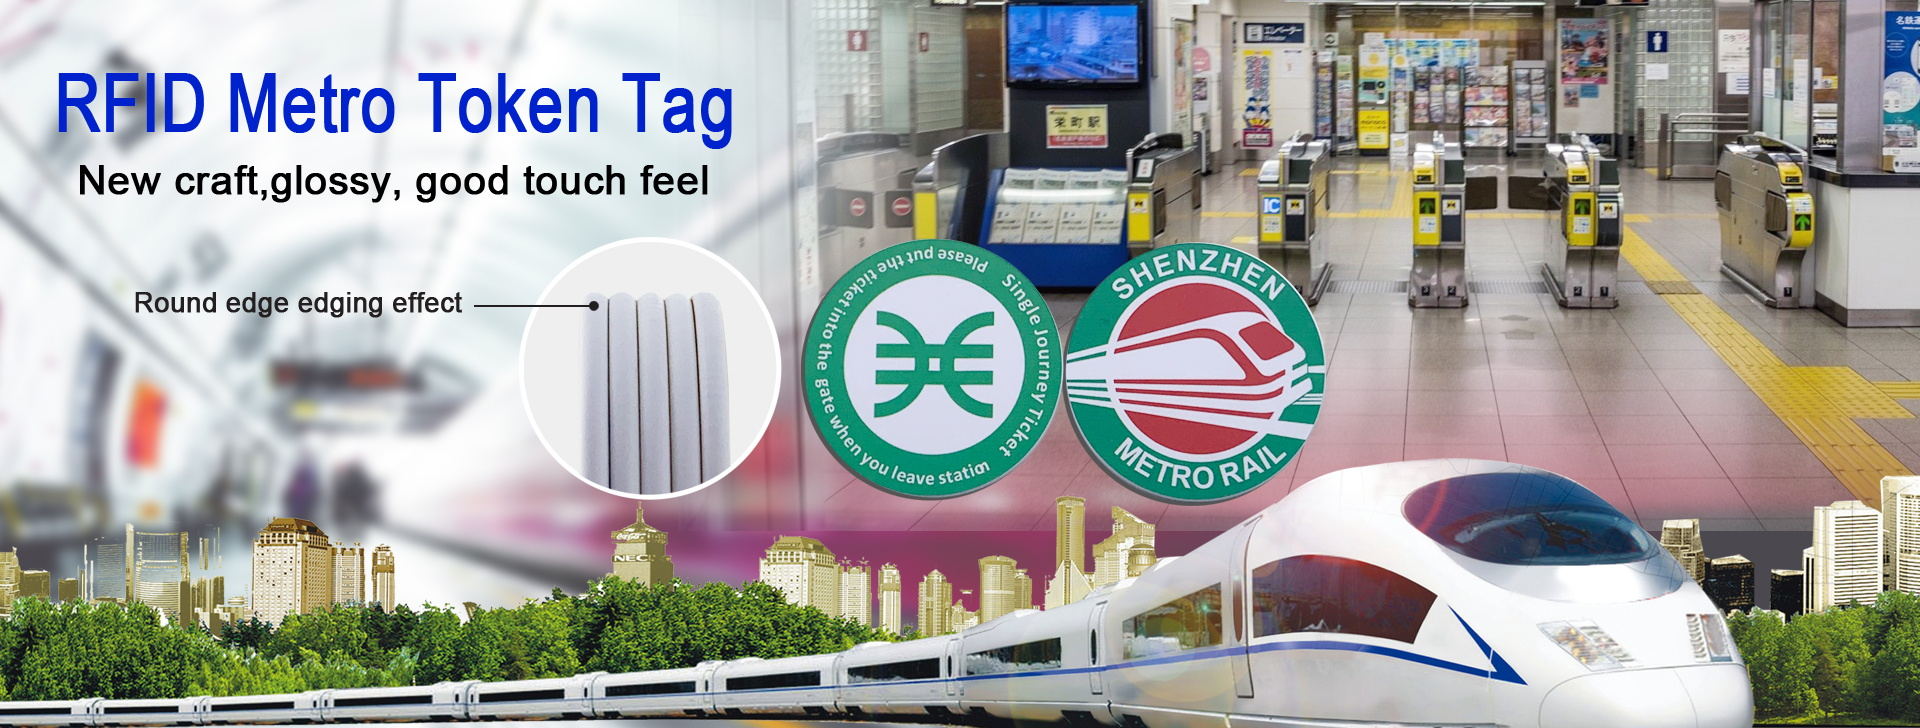 RFID Metro token Tag